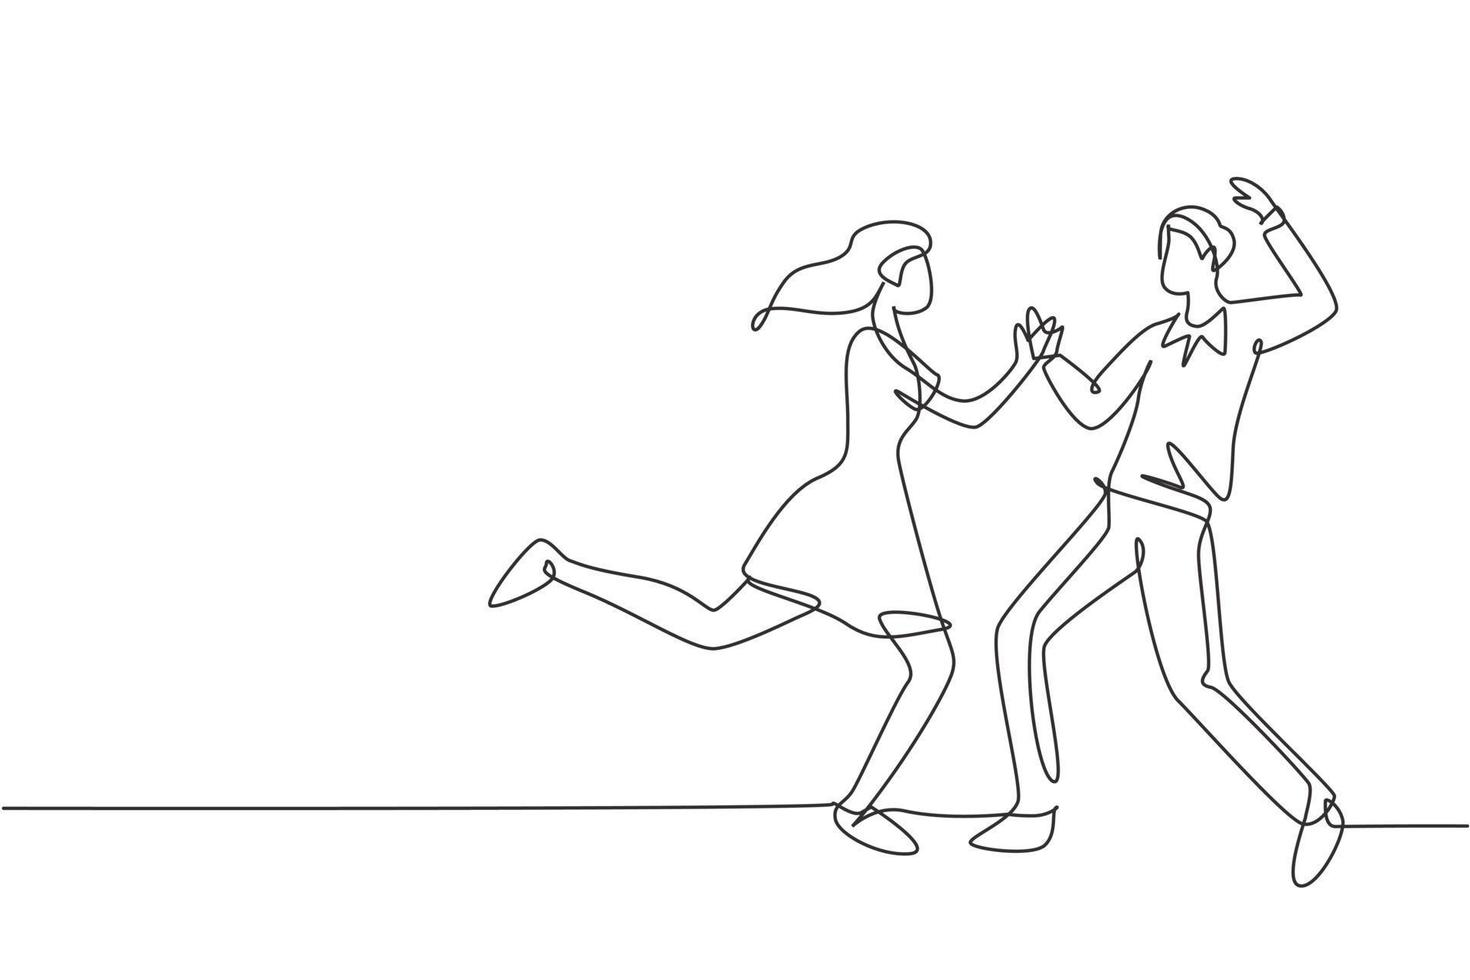 contínuo um desenho de linha casal feliz homem e mulher realizando dança na escola, estúdio, festa. personagens masculinos e femininos dançando tango juntos. ilustração gráfica de vetor de desenho de linha única